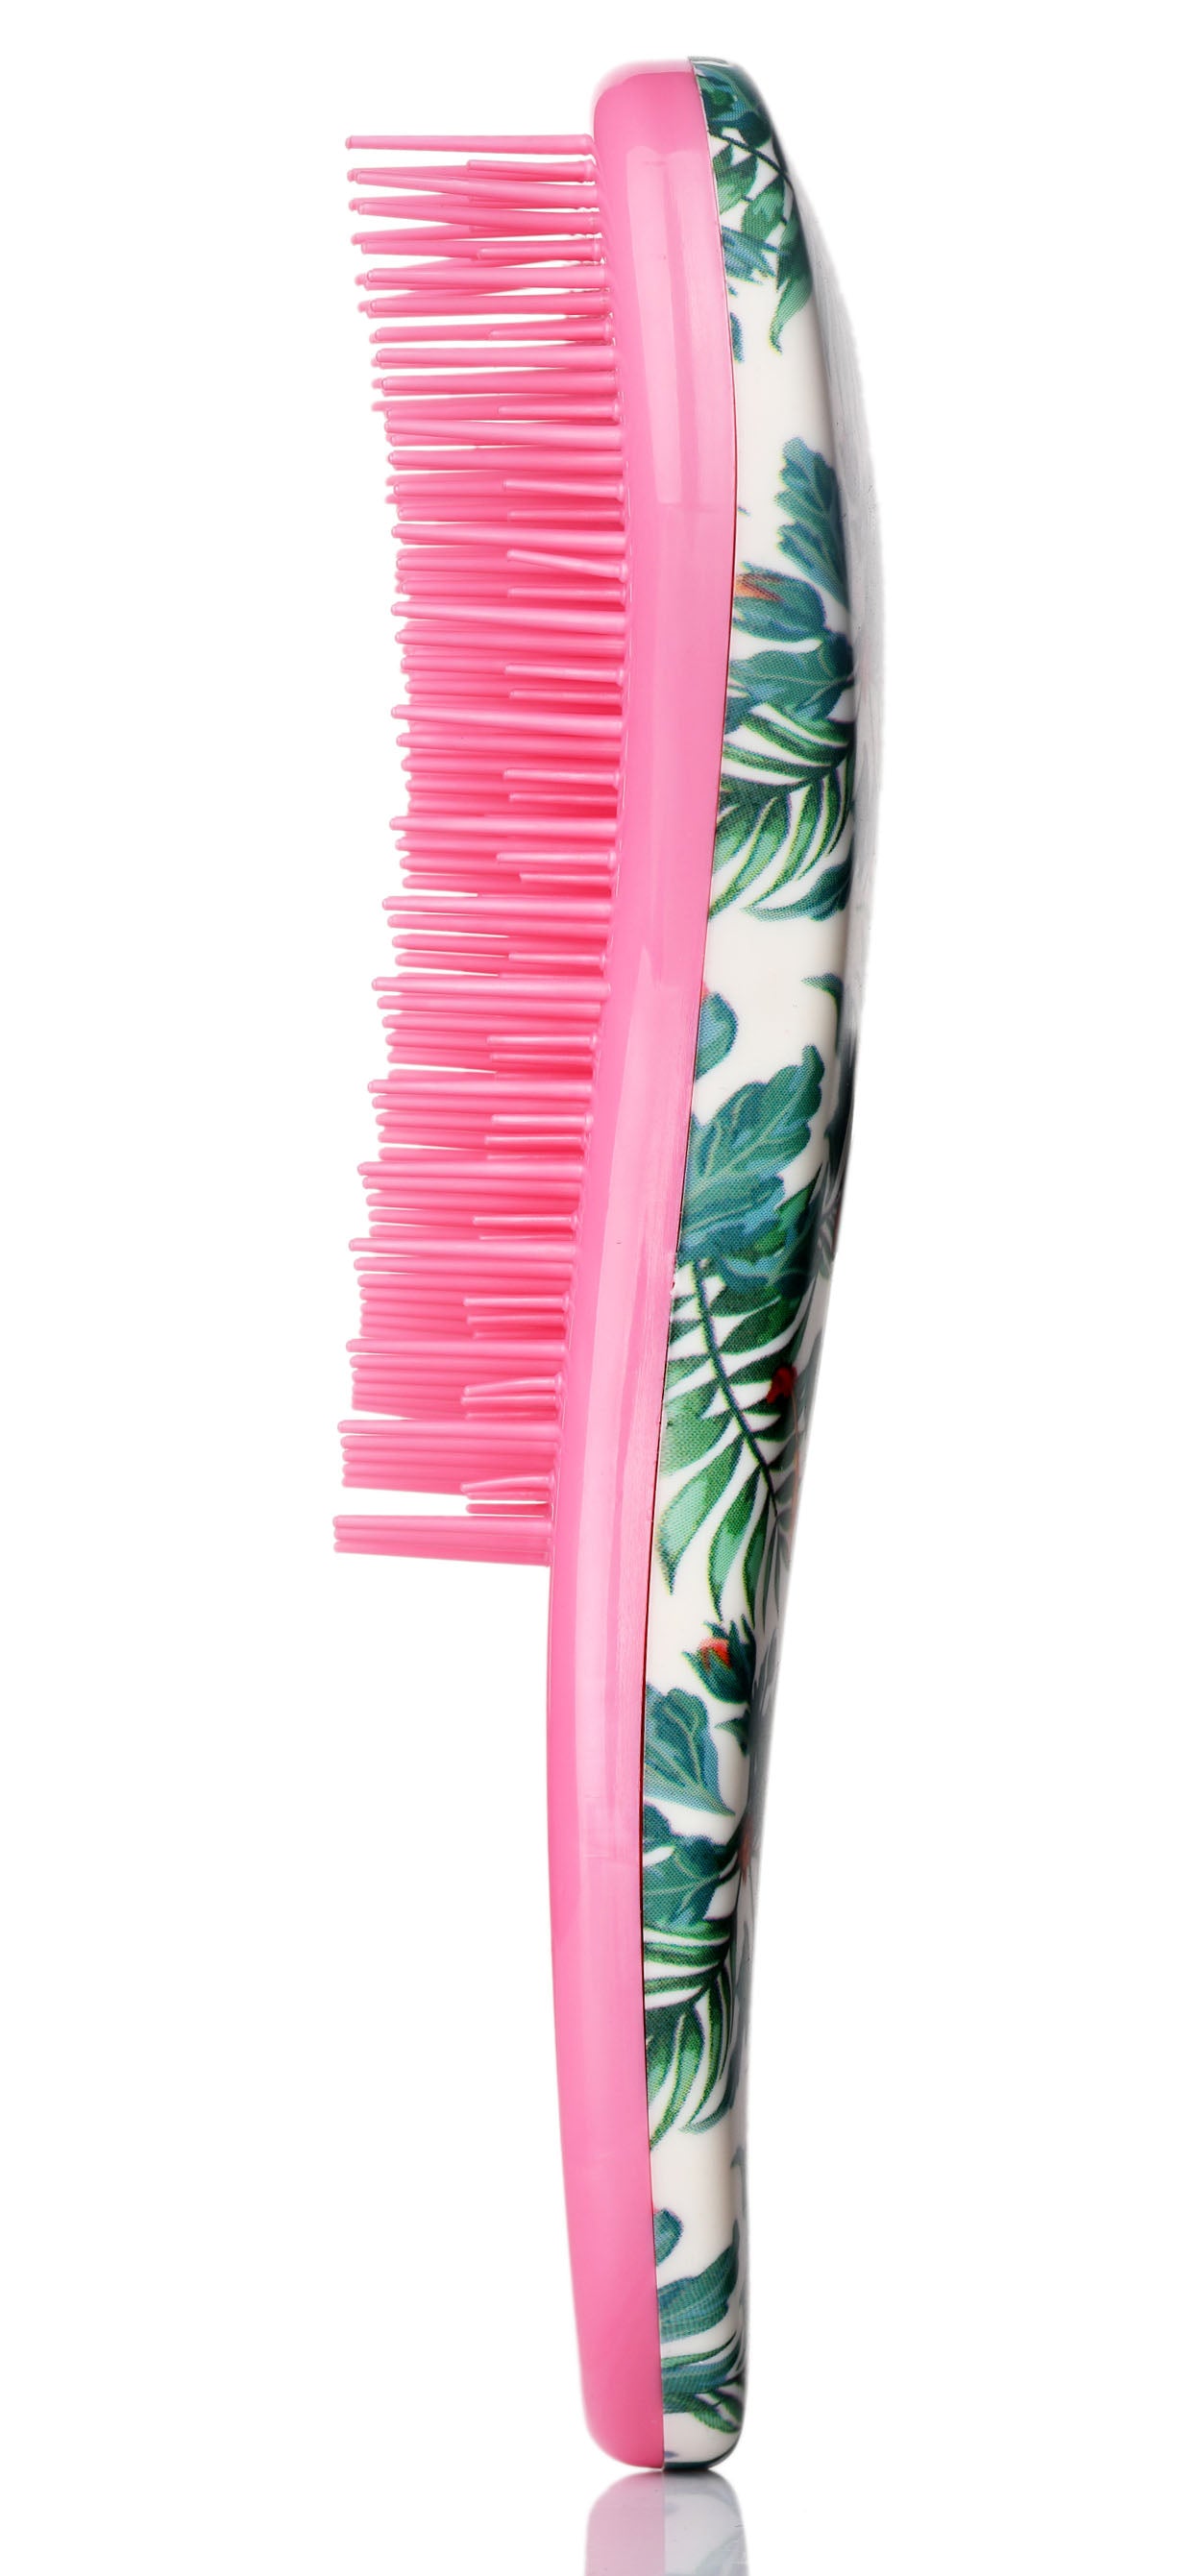 Detangler Hair Brush Wet Brush Mini Detangling Hairbrush for Curly Thick Natural Straight Fine Wet Dry Hair for Kids Toddlers Girls Pain Free Small (Rainforest)